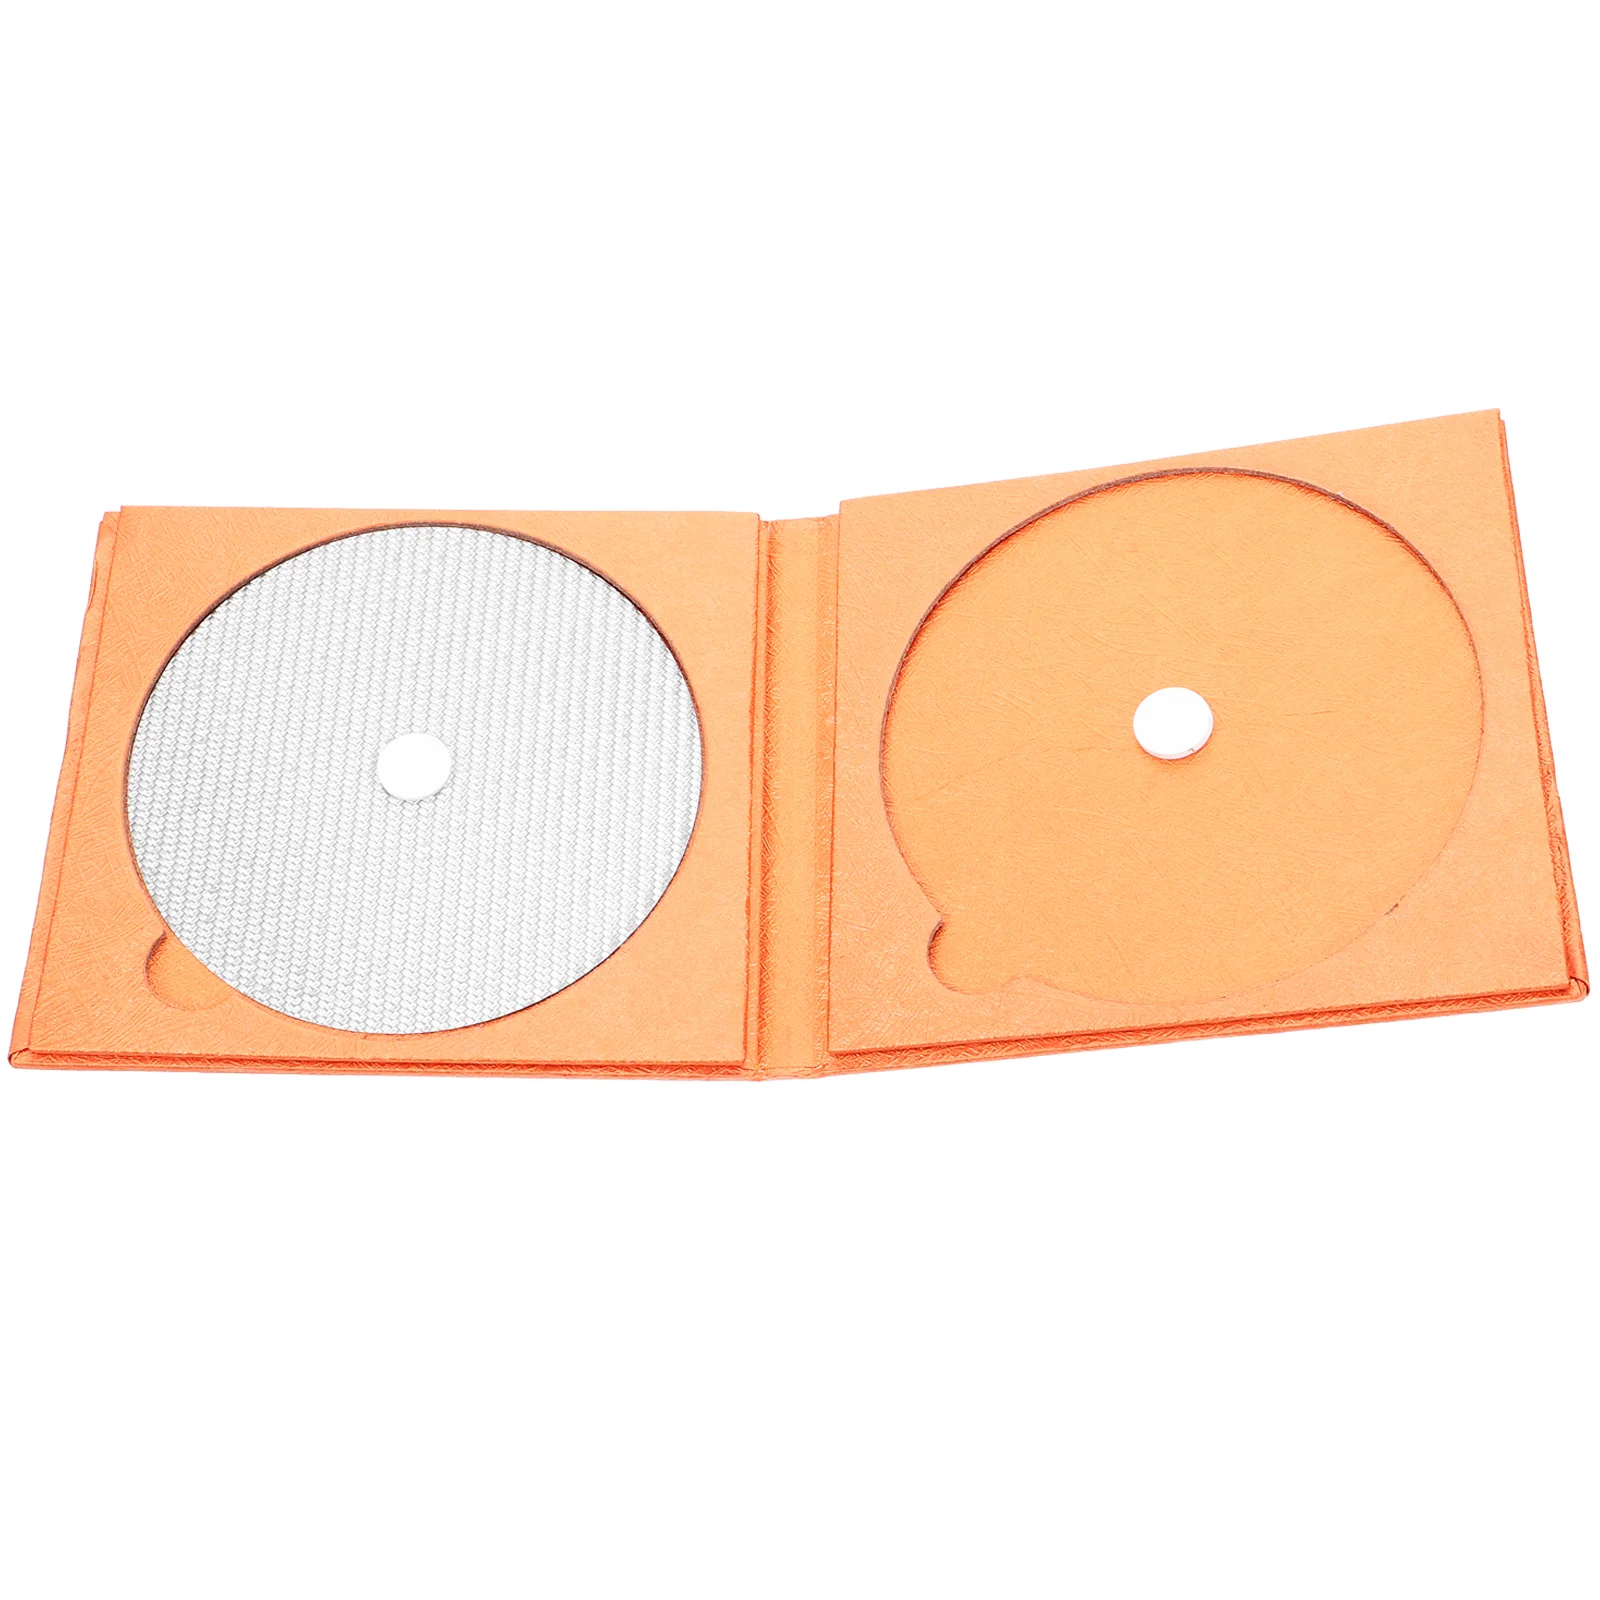 

CD DVD тюнинг Pad углеродное волокно CD тюнинг мат профессиональные диски стабилизатор для CD